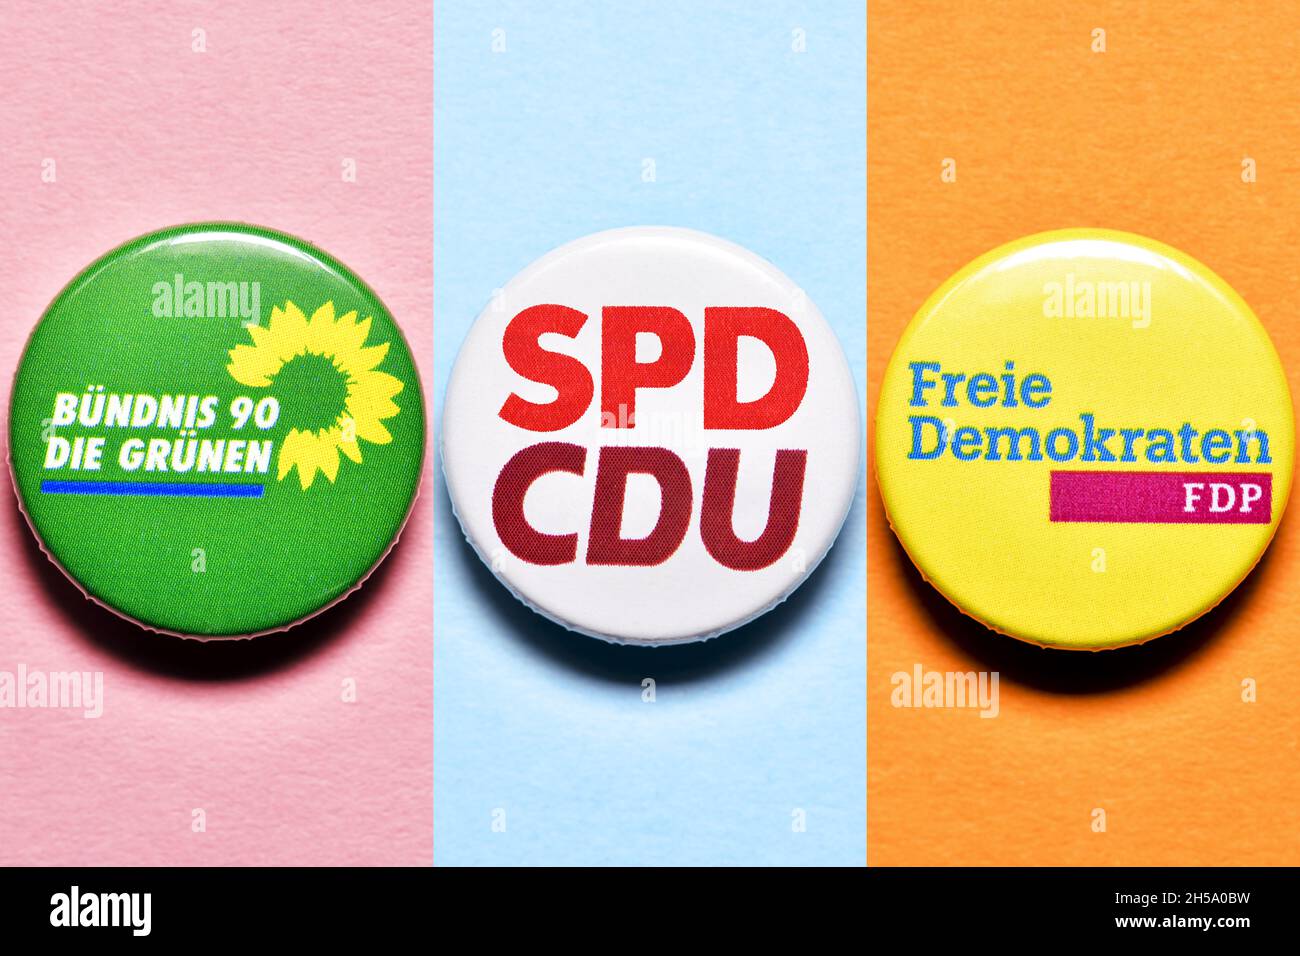 FTOMONTAGE, gemeinsamer Partei-Anstecker von der CDU und der SPD und Anstecker der FDP und den Grünen, Symbolfoto Koalitionsverhandlungen Foto Stock